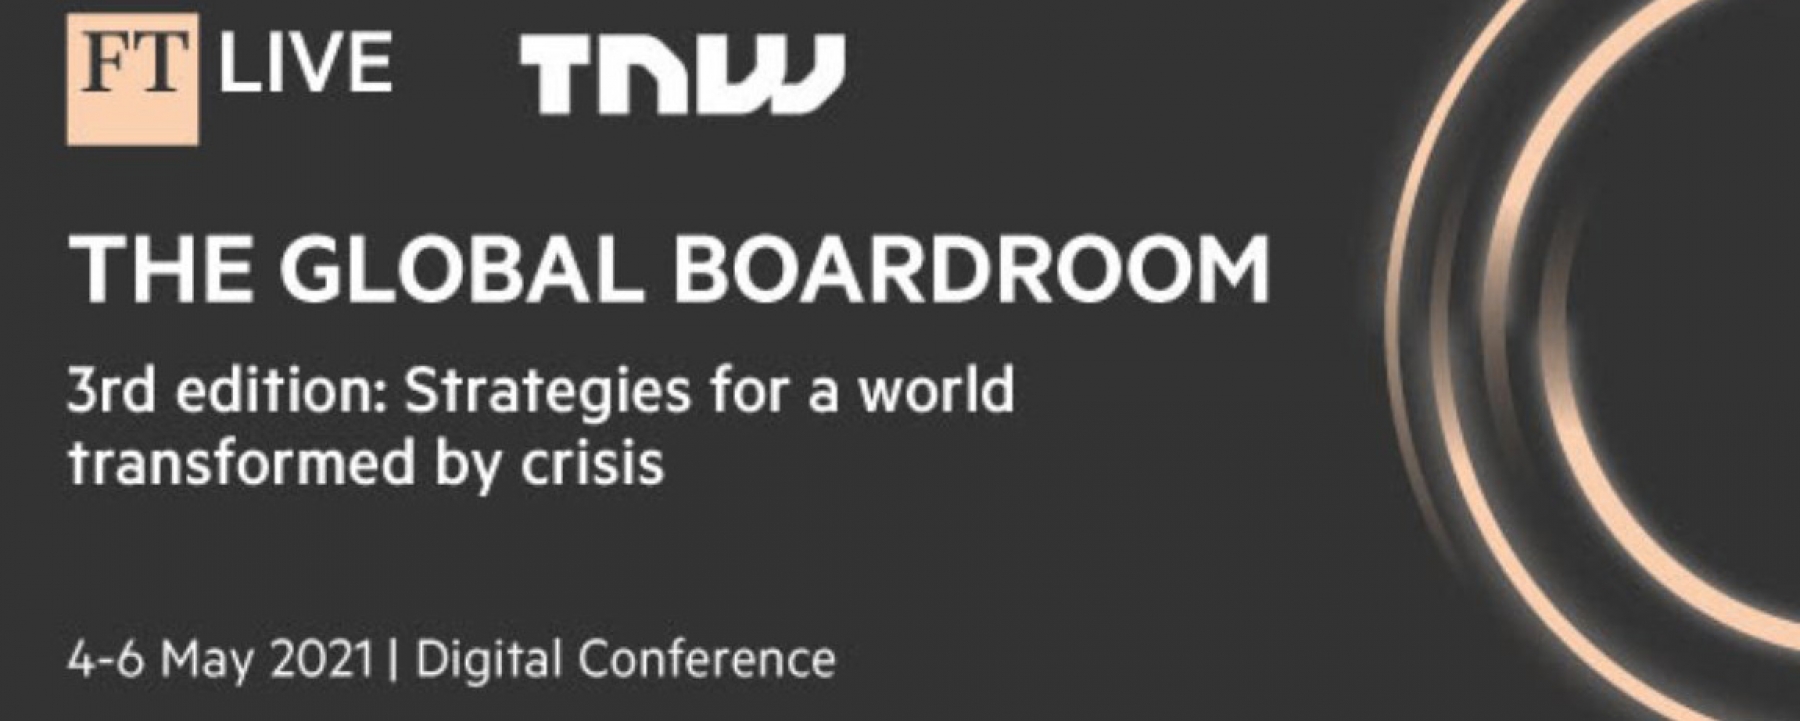 The Global Boardroom, organisé par TNW et FTLIVE du 4 au 6 mai 2021